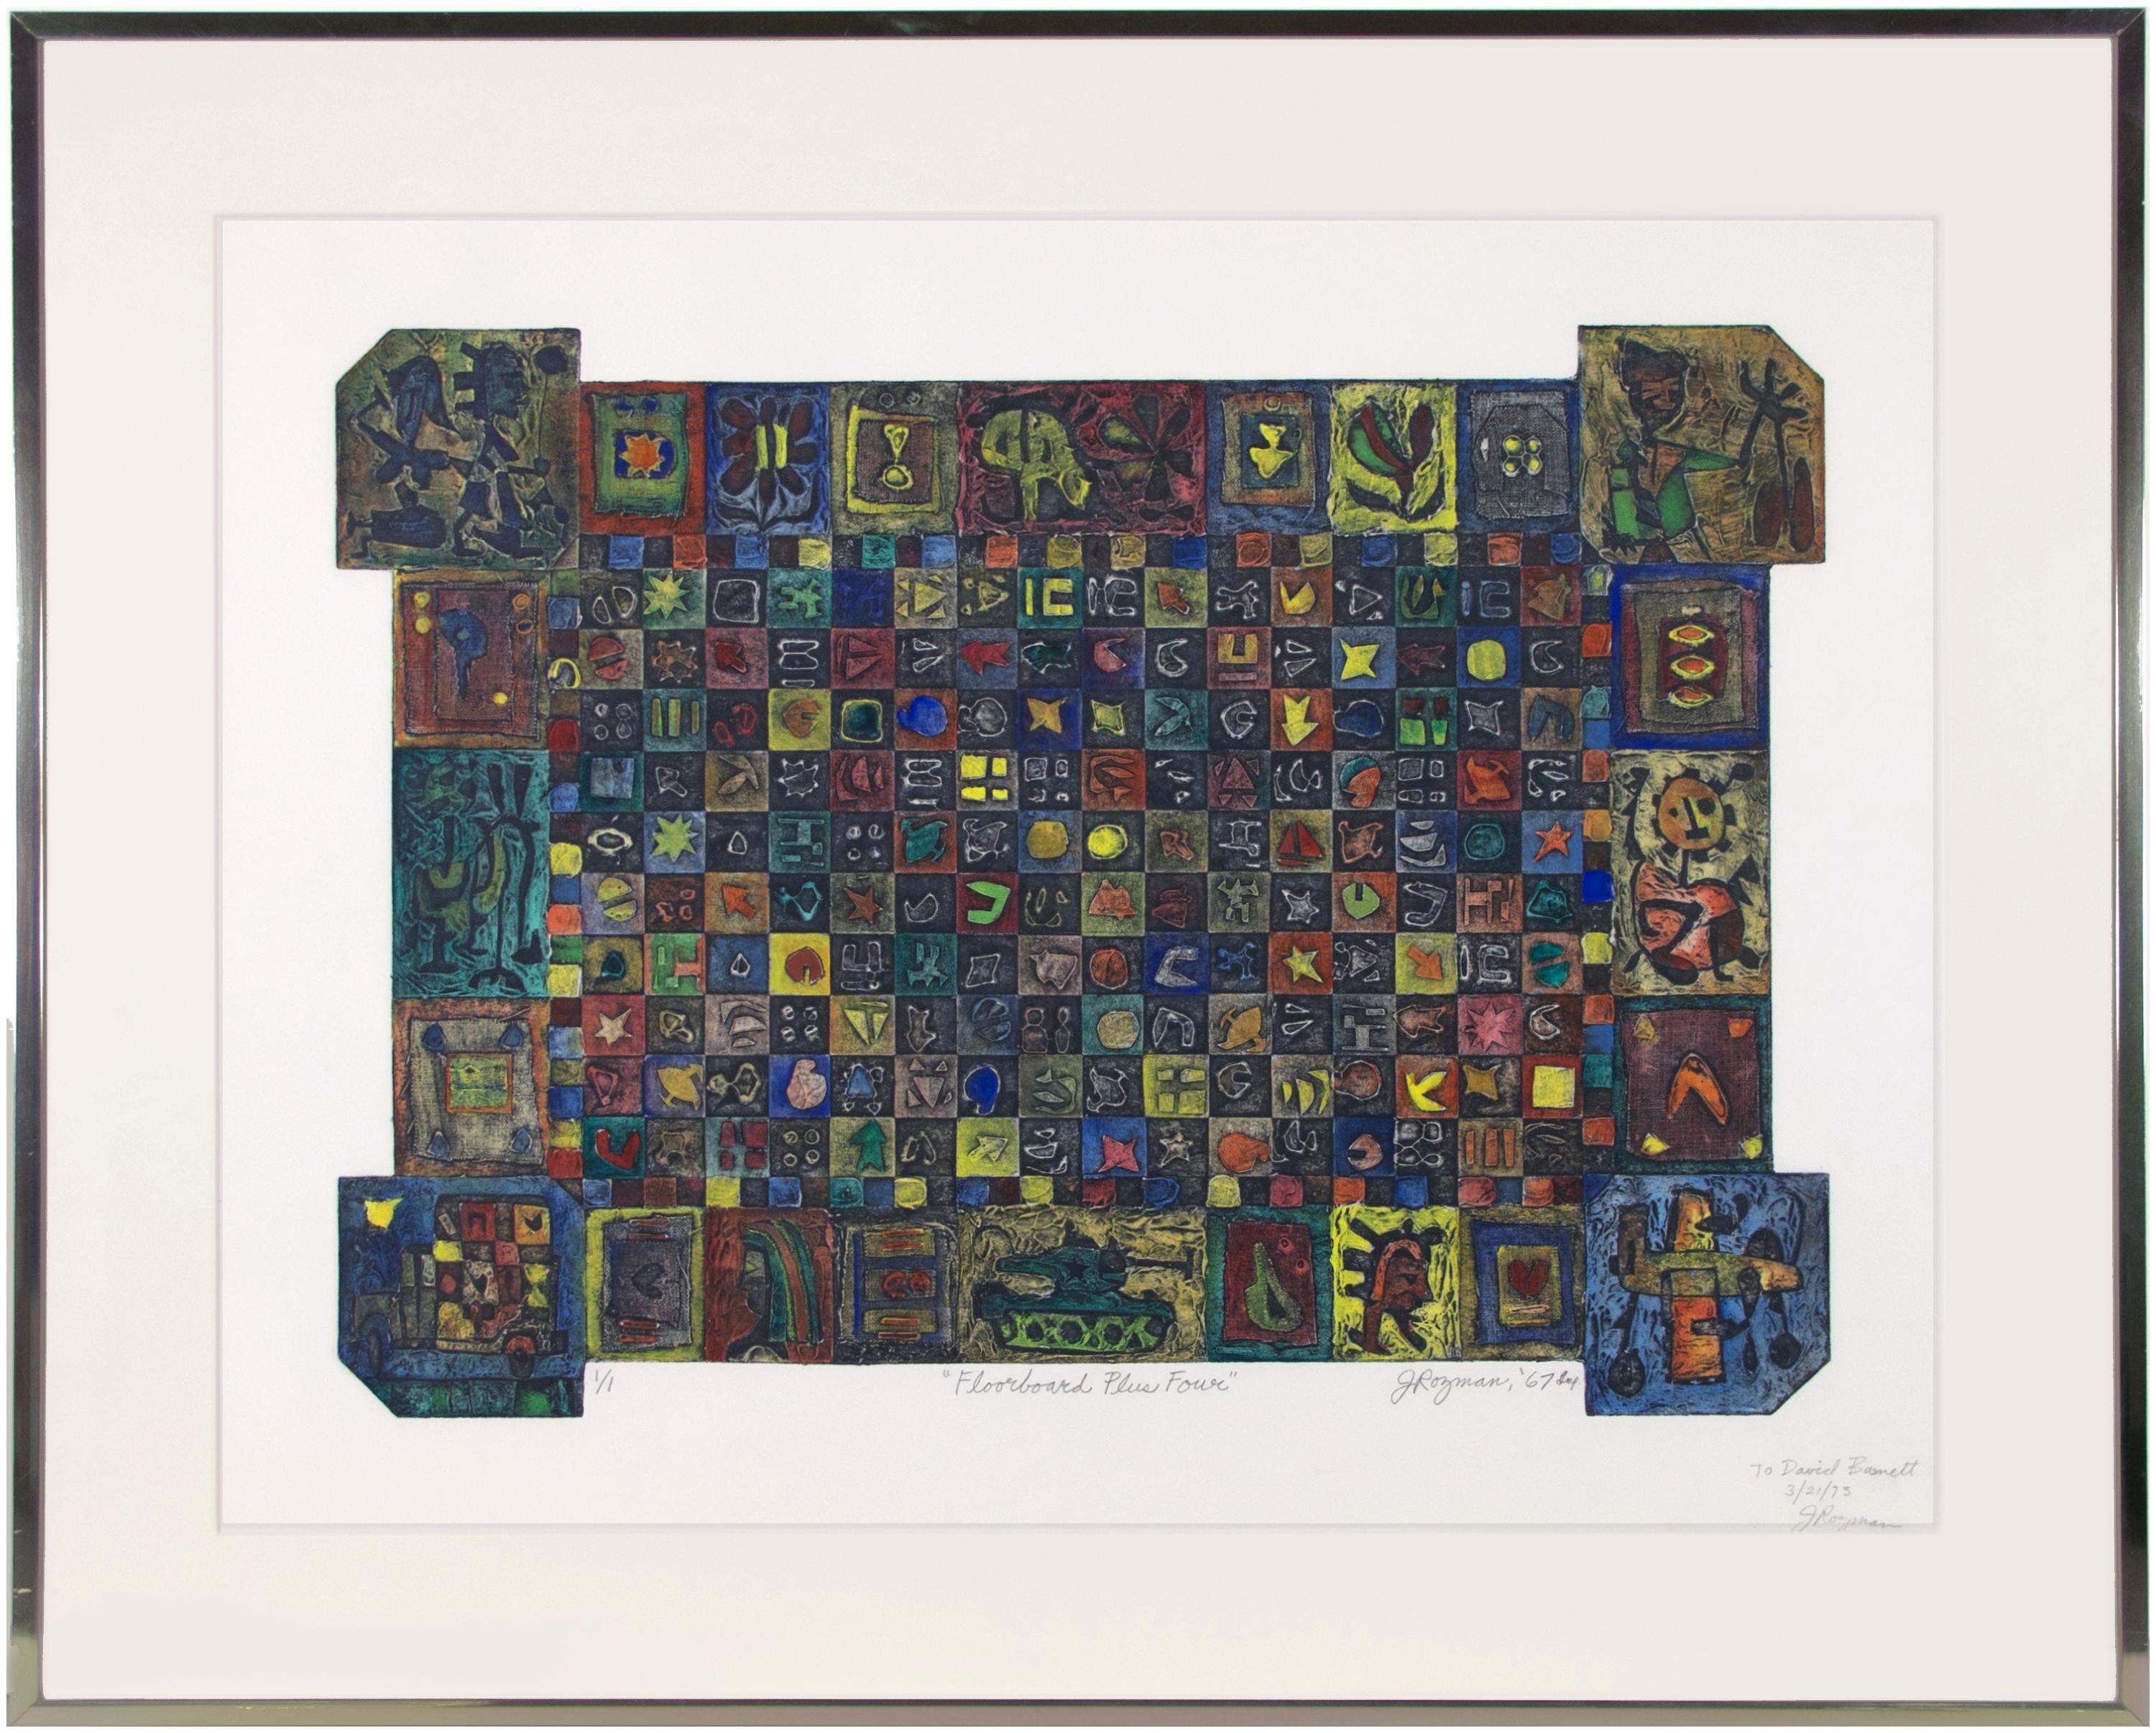 Die vorliegende einzigartige Collagierung ist ein hervorragendes Beispiel für den malerischen Stil von Joseph Rozman. Die Komposition ist wie ein Kachelboden aufgebaut, wobei jedes Quadrat ein abstrahiertes Bild oder Symbol enthält. Um die Grenze